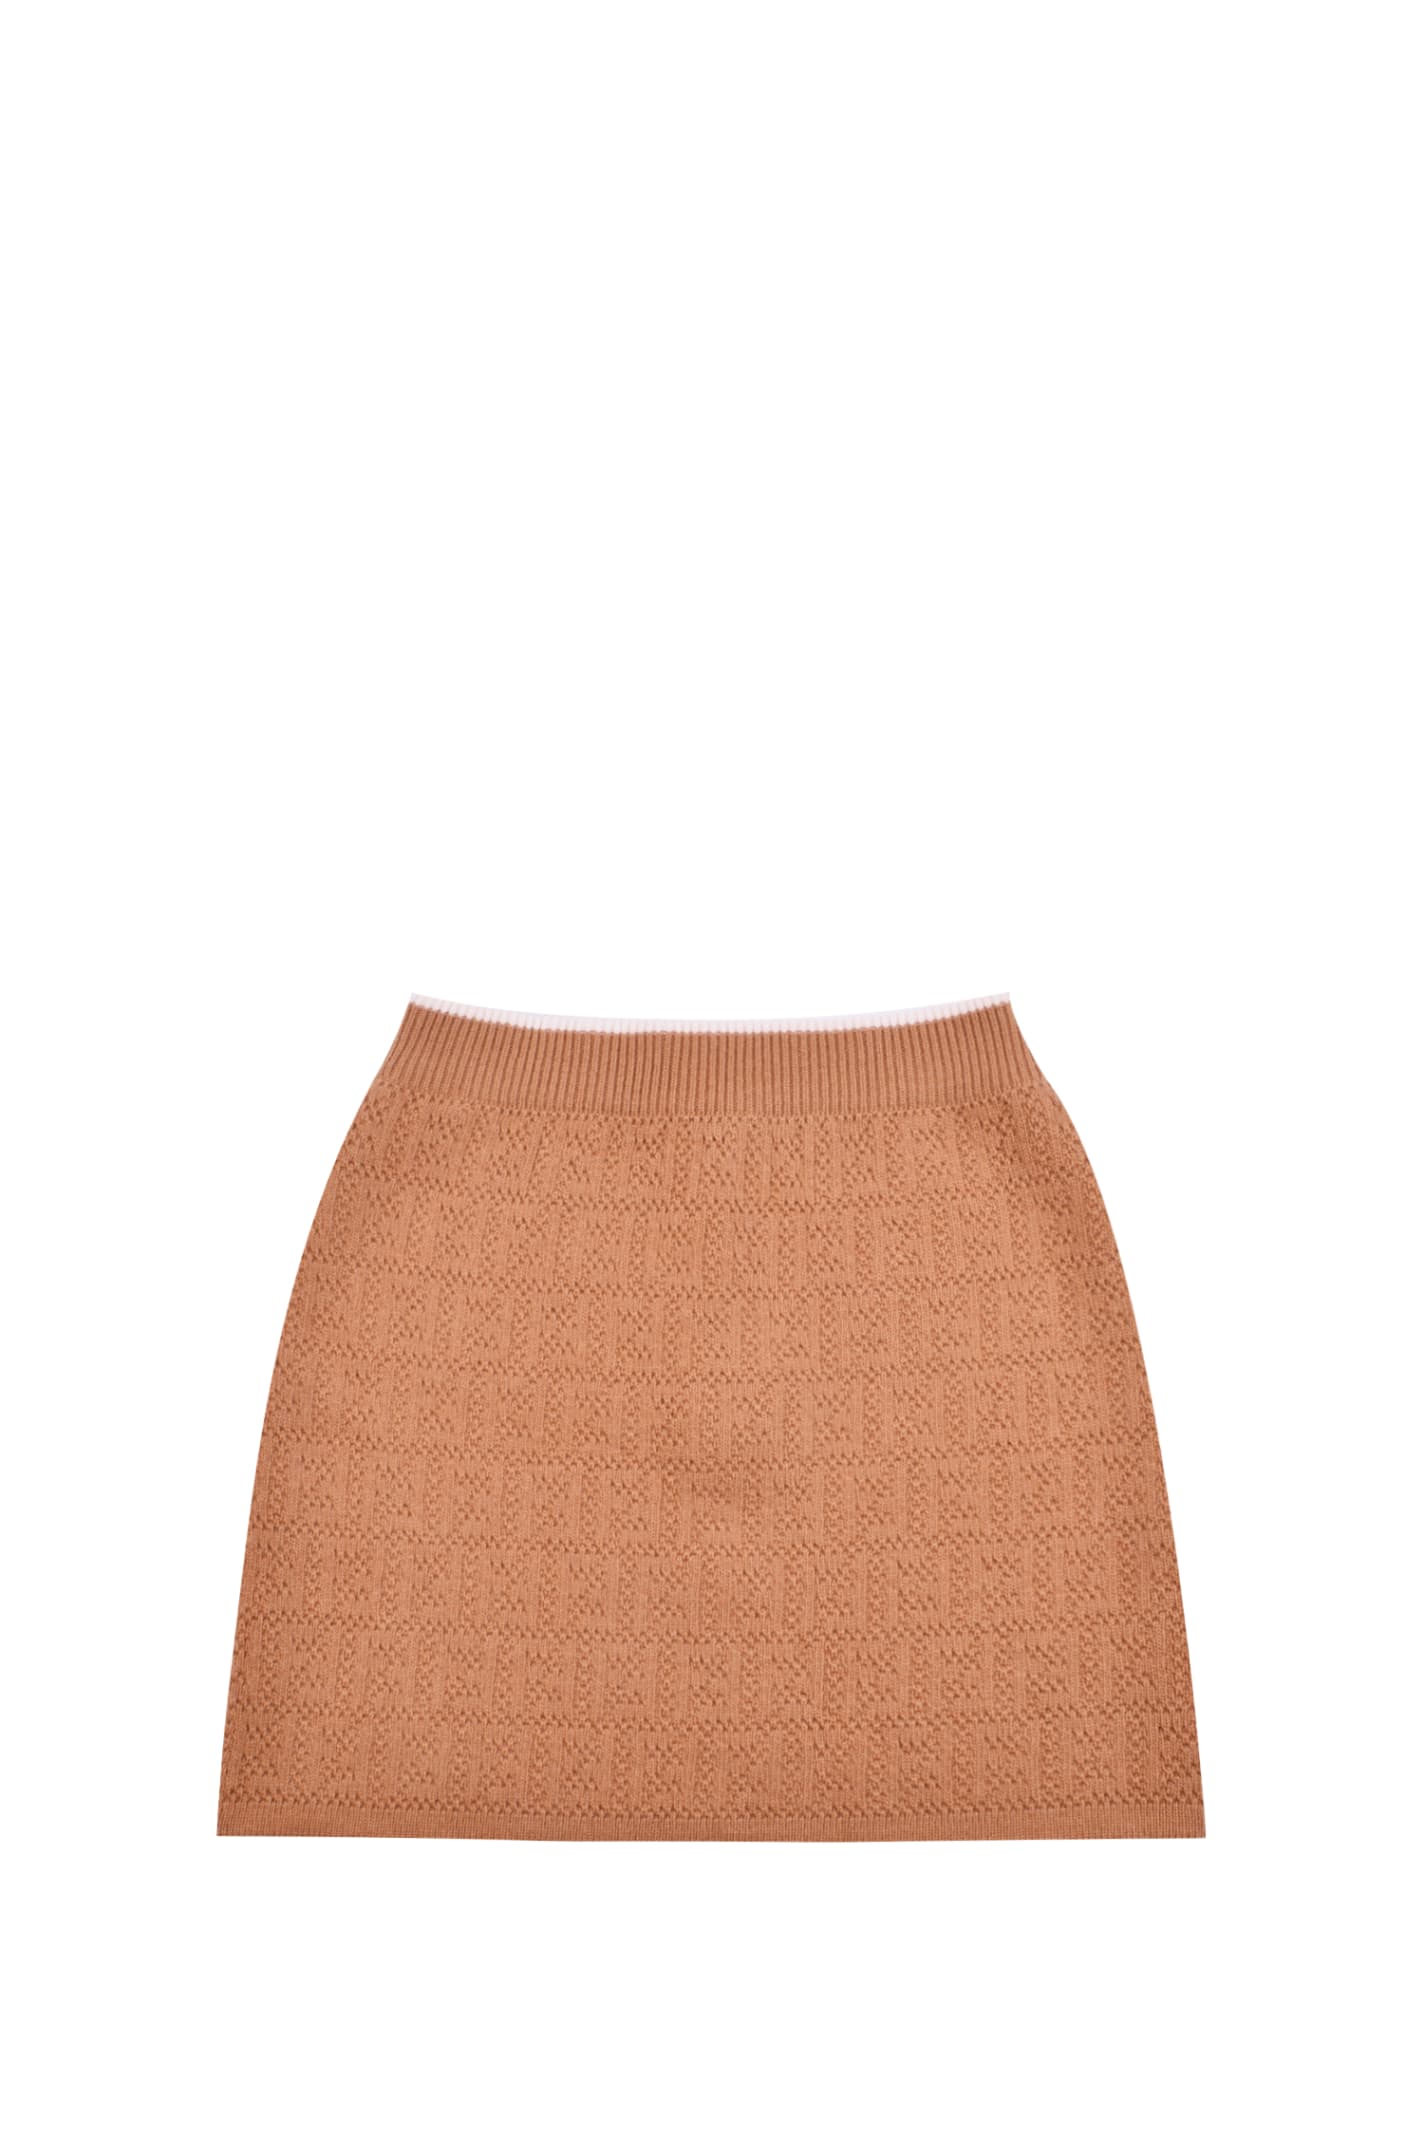 Fendi Wool Skirt